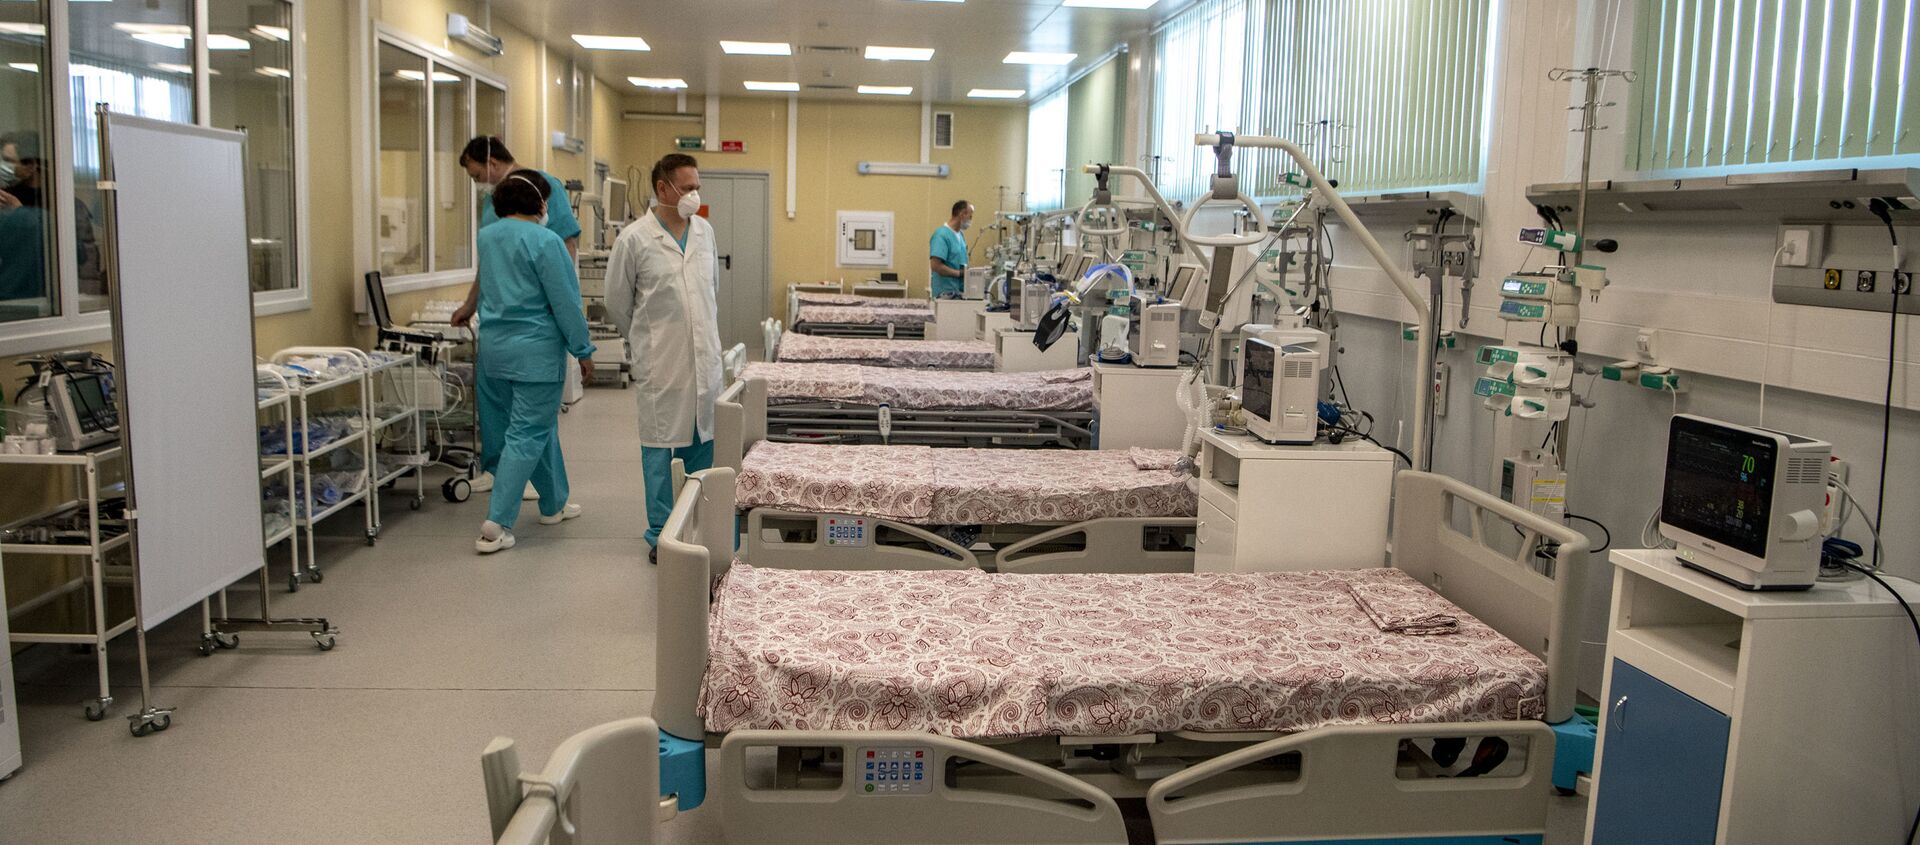 Медицинские работники готовят отделение реанимации новой больницы - Sputnik Молдова, 1920, 13.05.2020